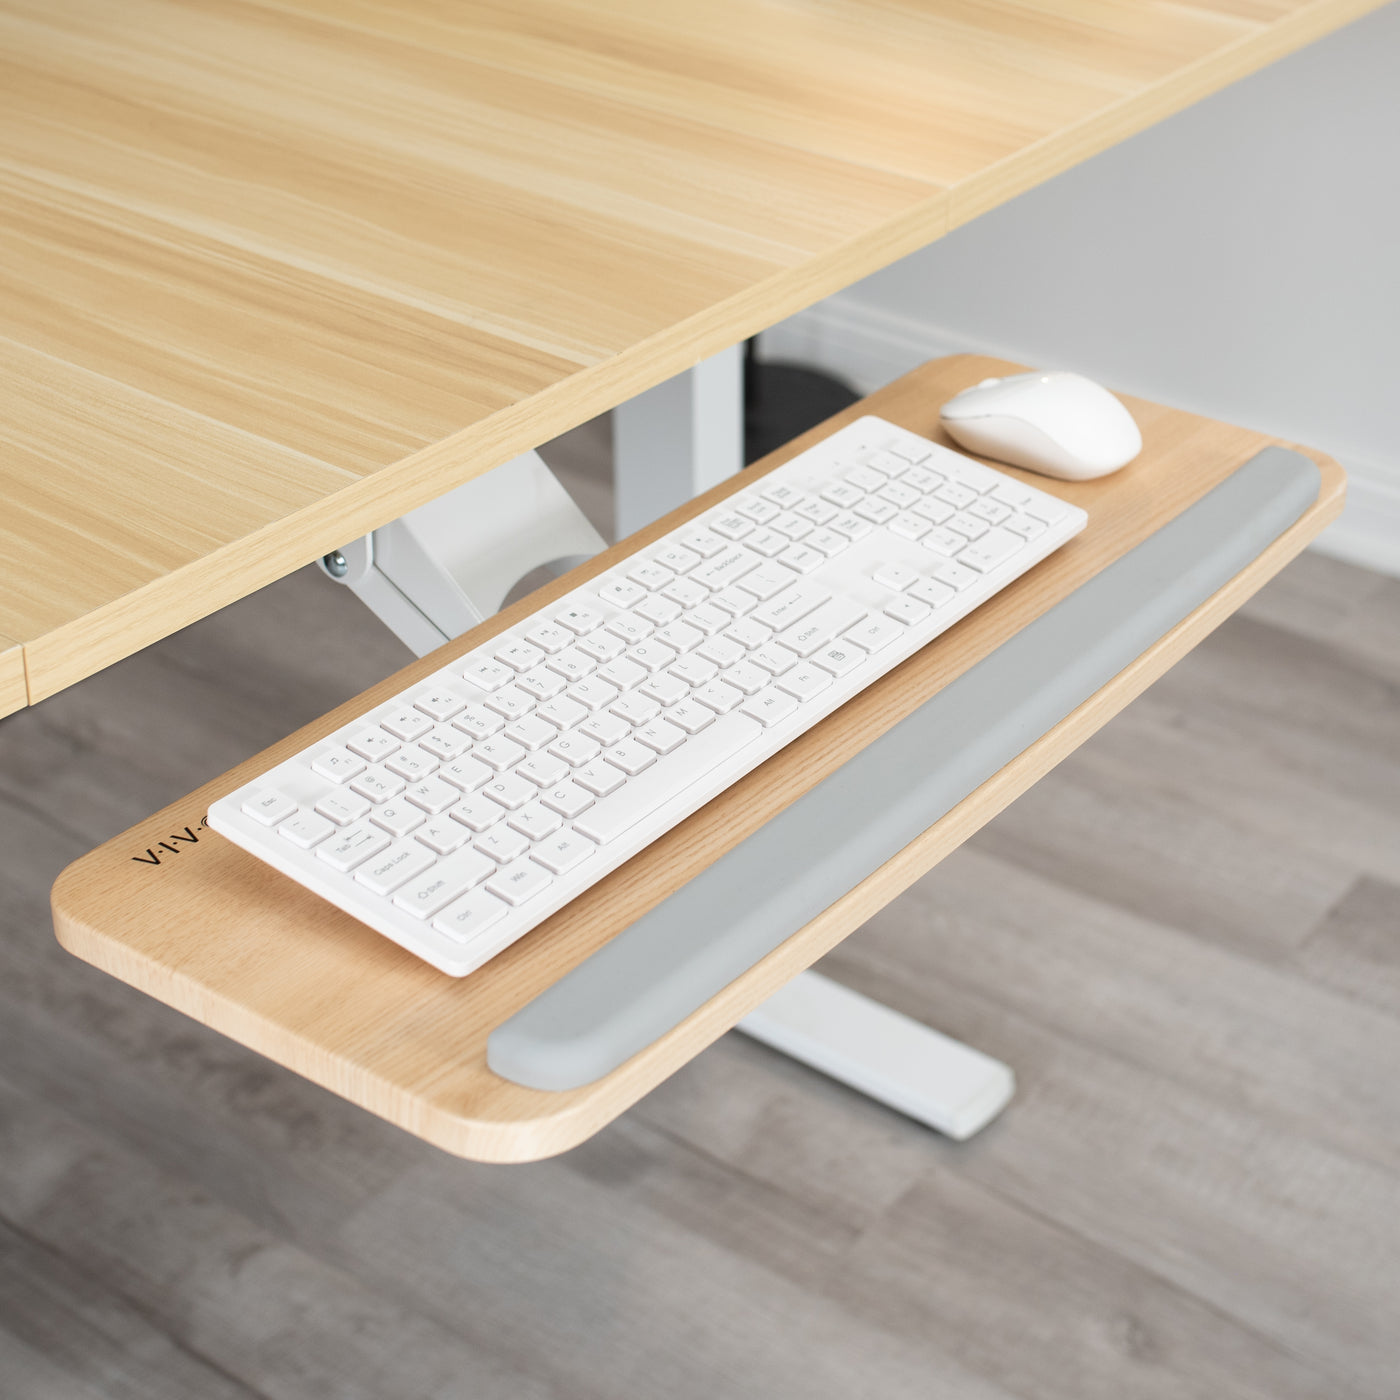 Ergonomic under desk keyboard tray mount attachment.